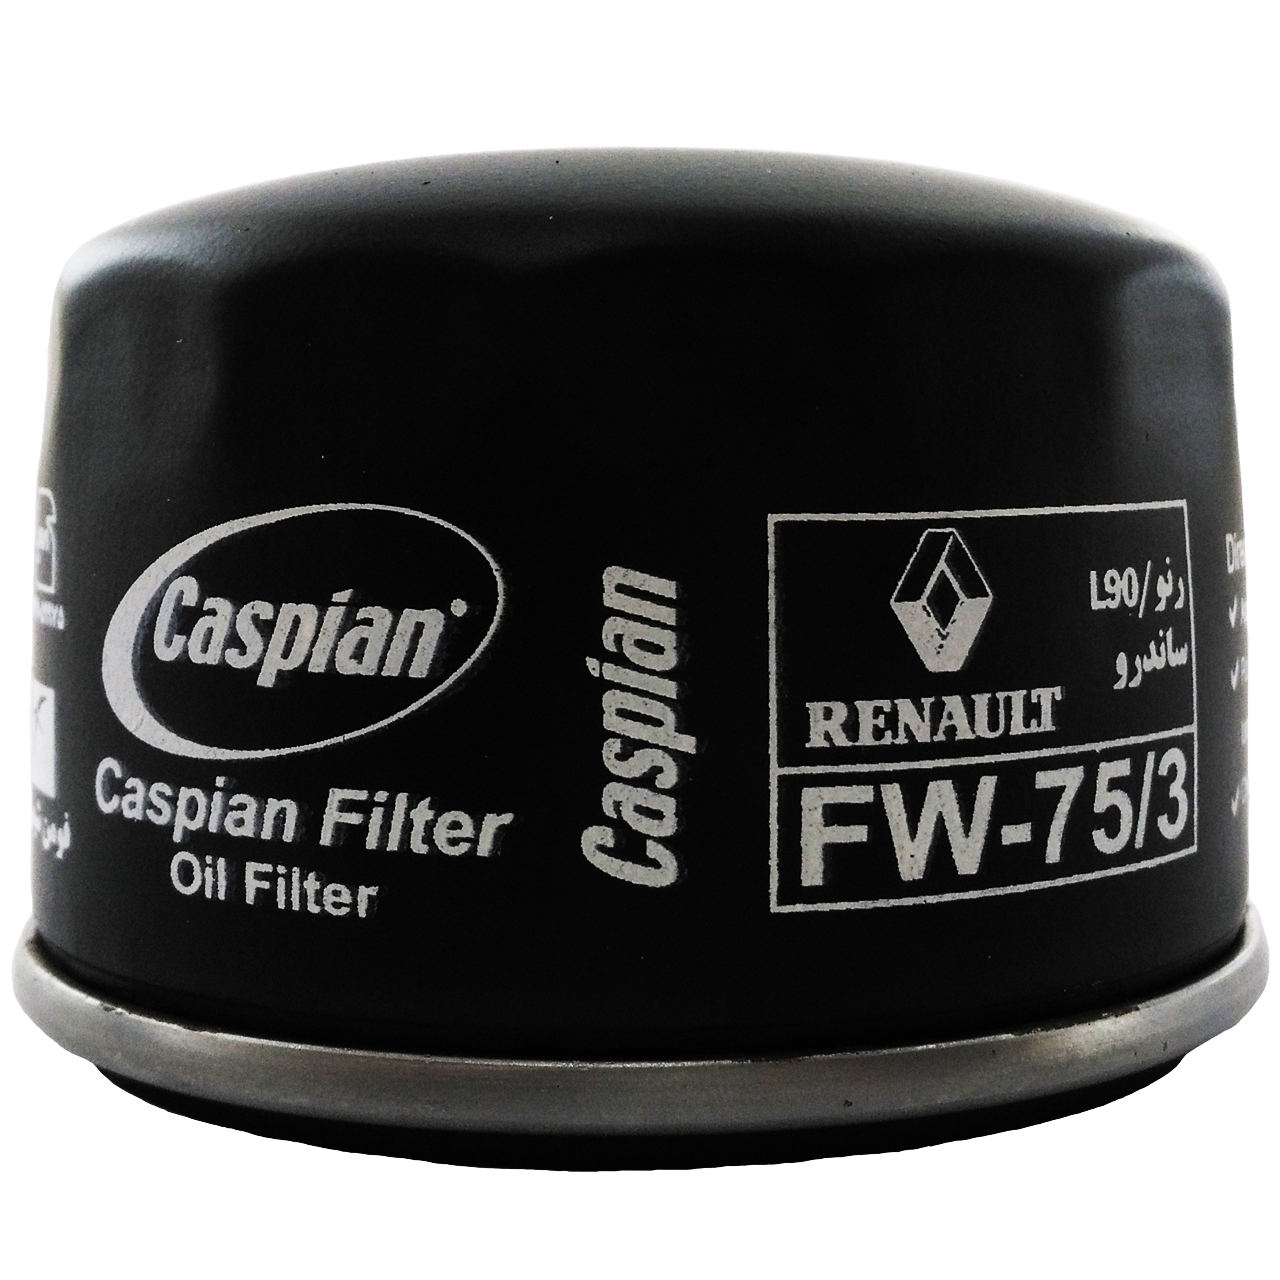 فیلتر روغن خودروی کاسپین مدل FW-75/3 مناسب برای رنو L90